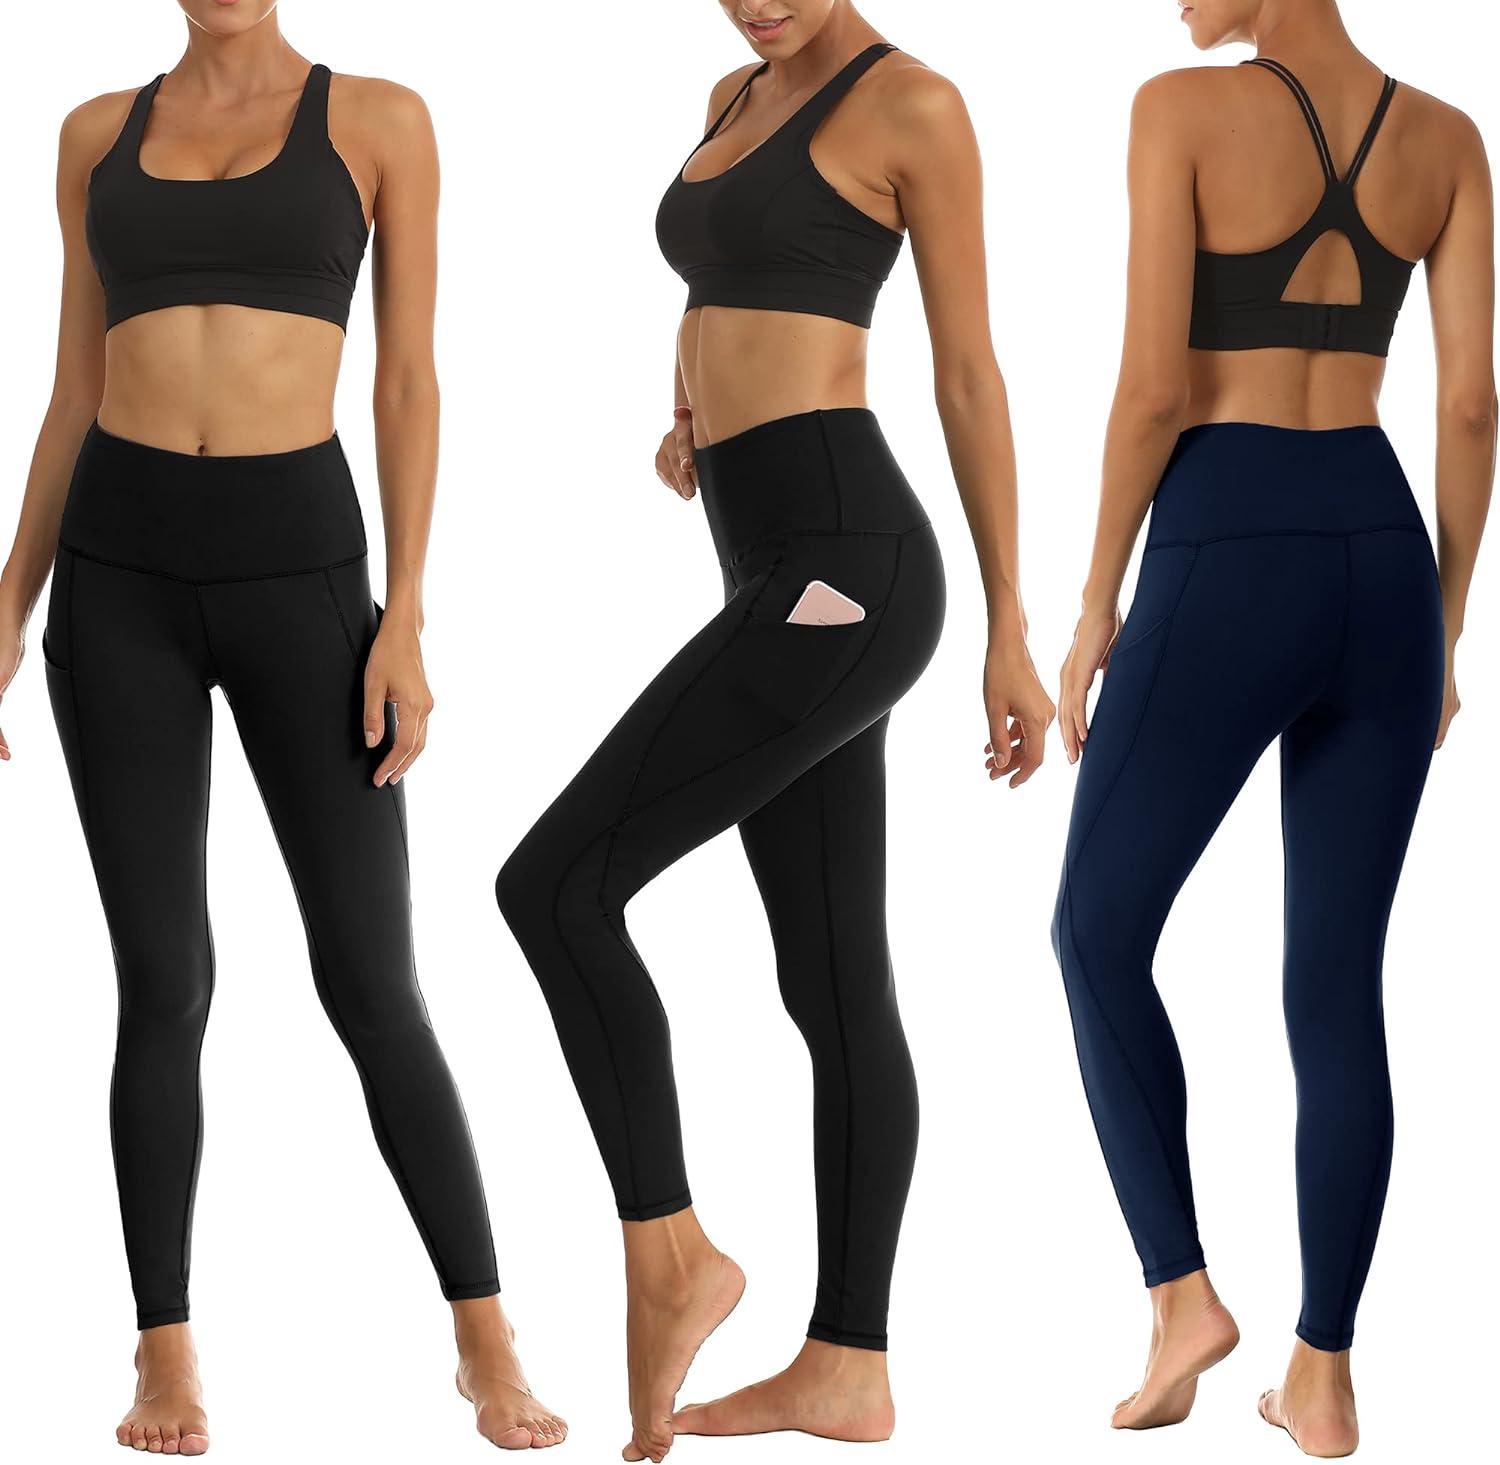 Navy Blue Yoga Pants for Girls Athletic Leggings Fitness Running